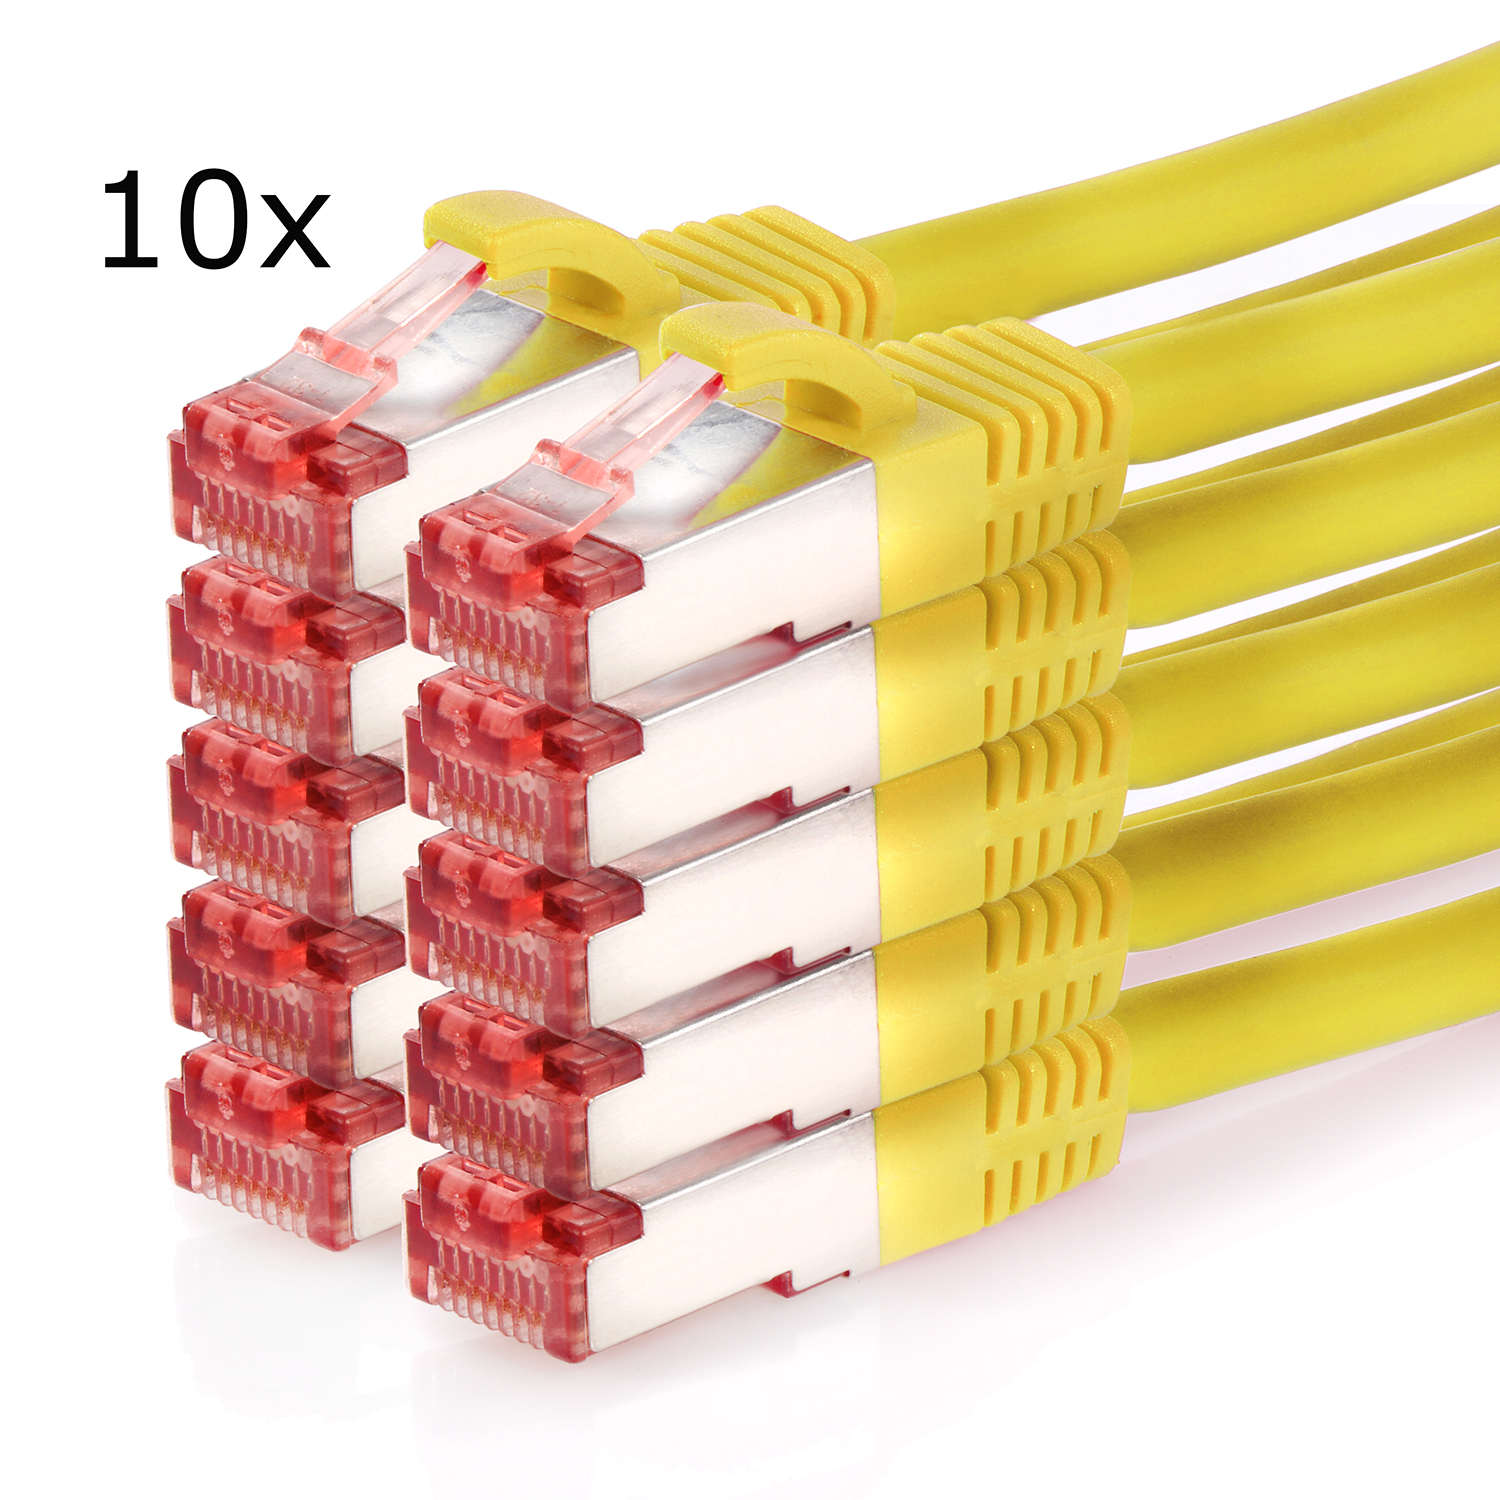 Netzwerkkabel gelb, 1,5m TPFNET S/FTP Pack 1,5 / 1000Mbit, 10er m Netzwerkkabel, Patchkabel